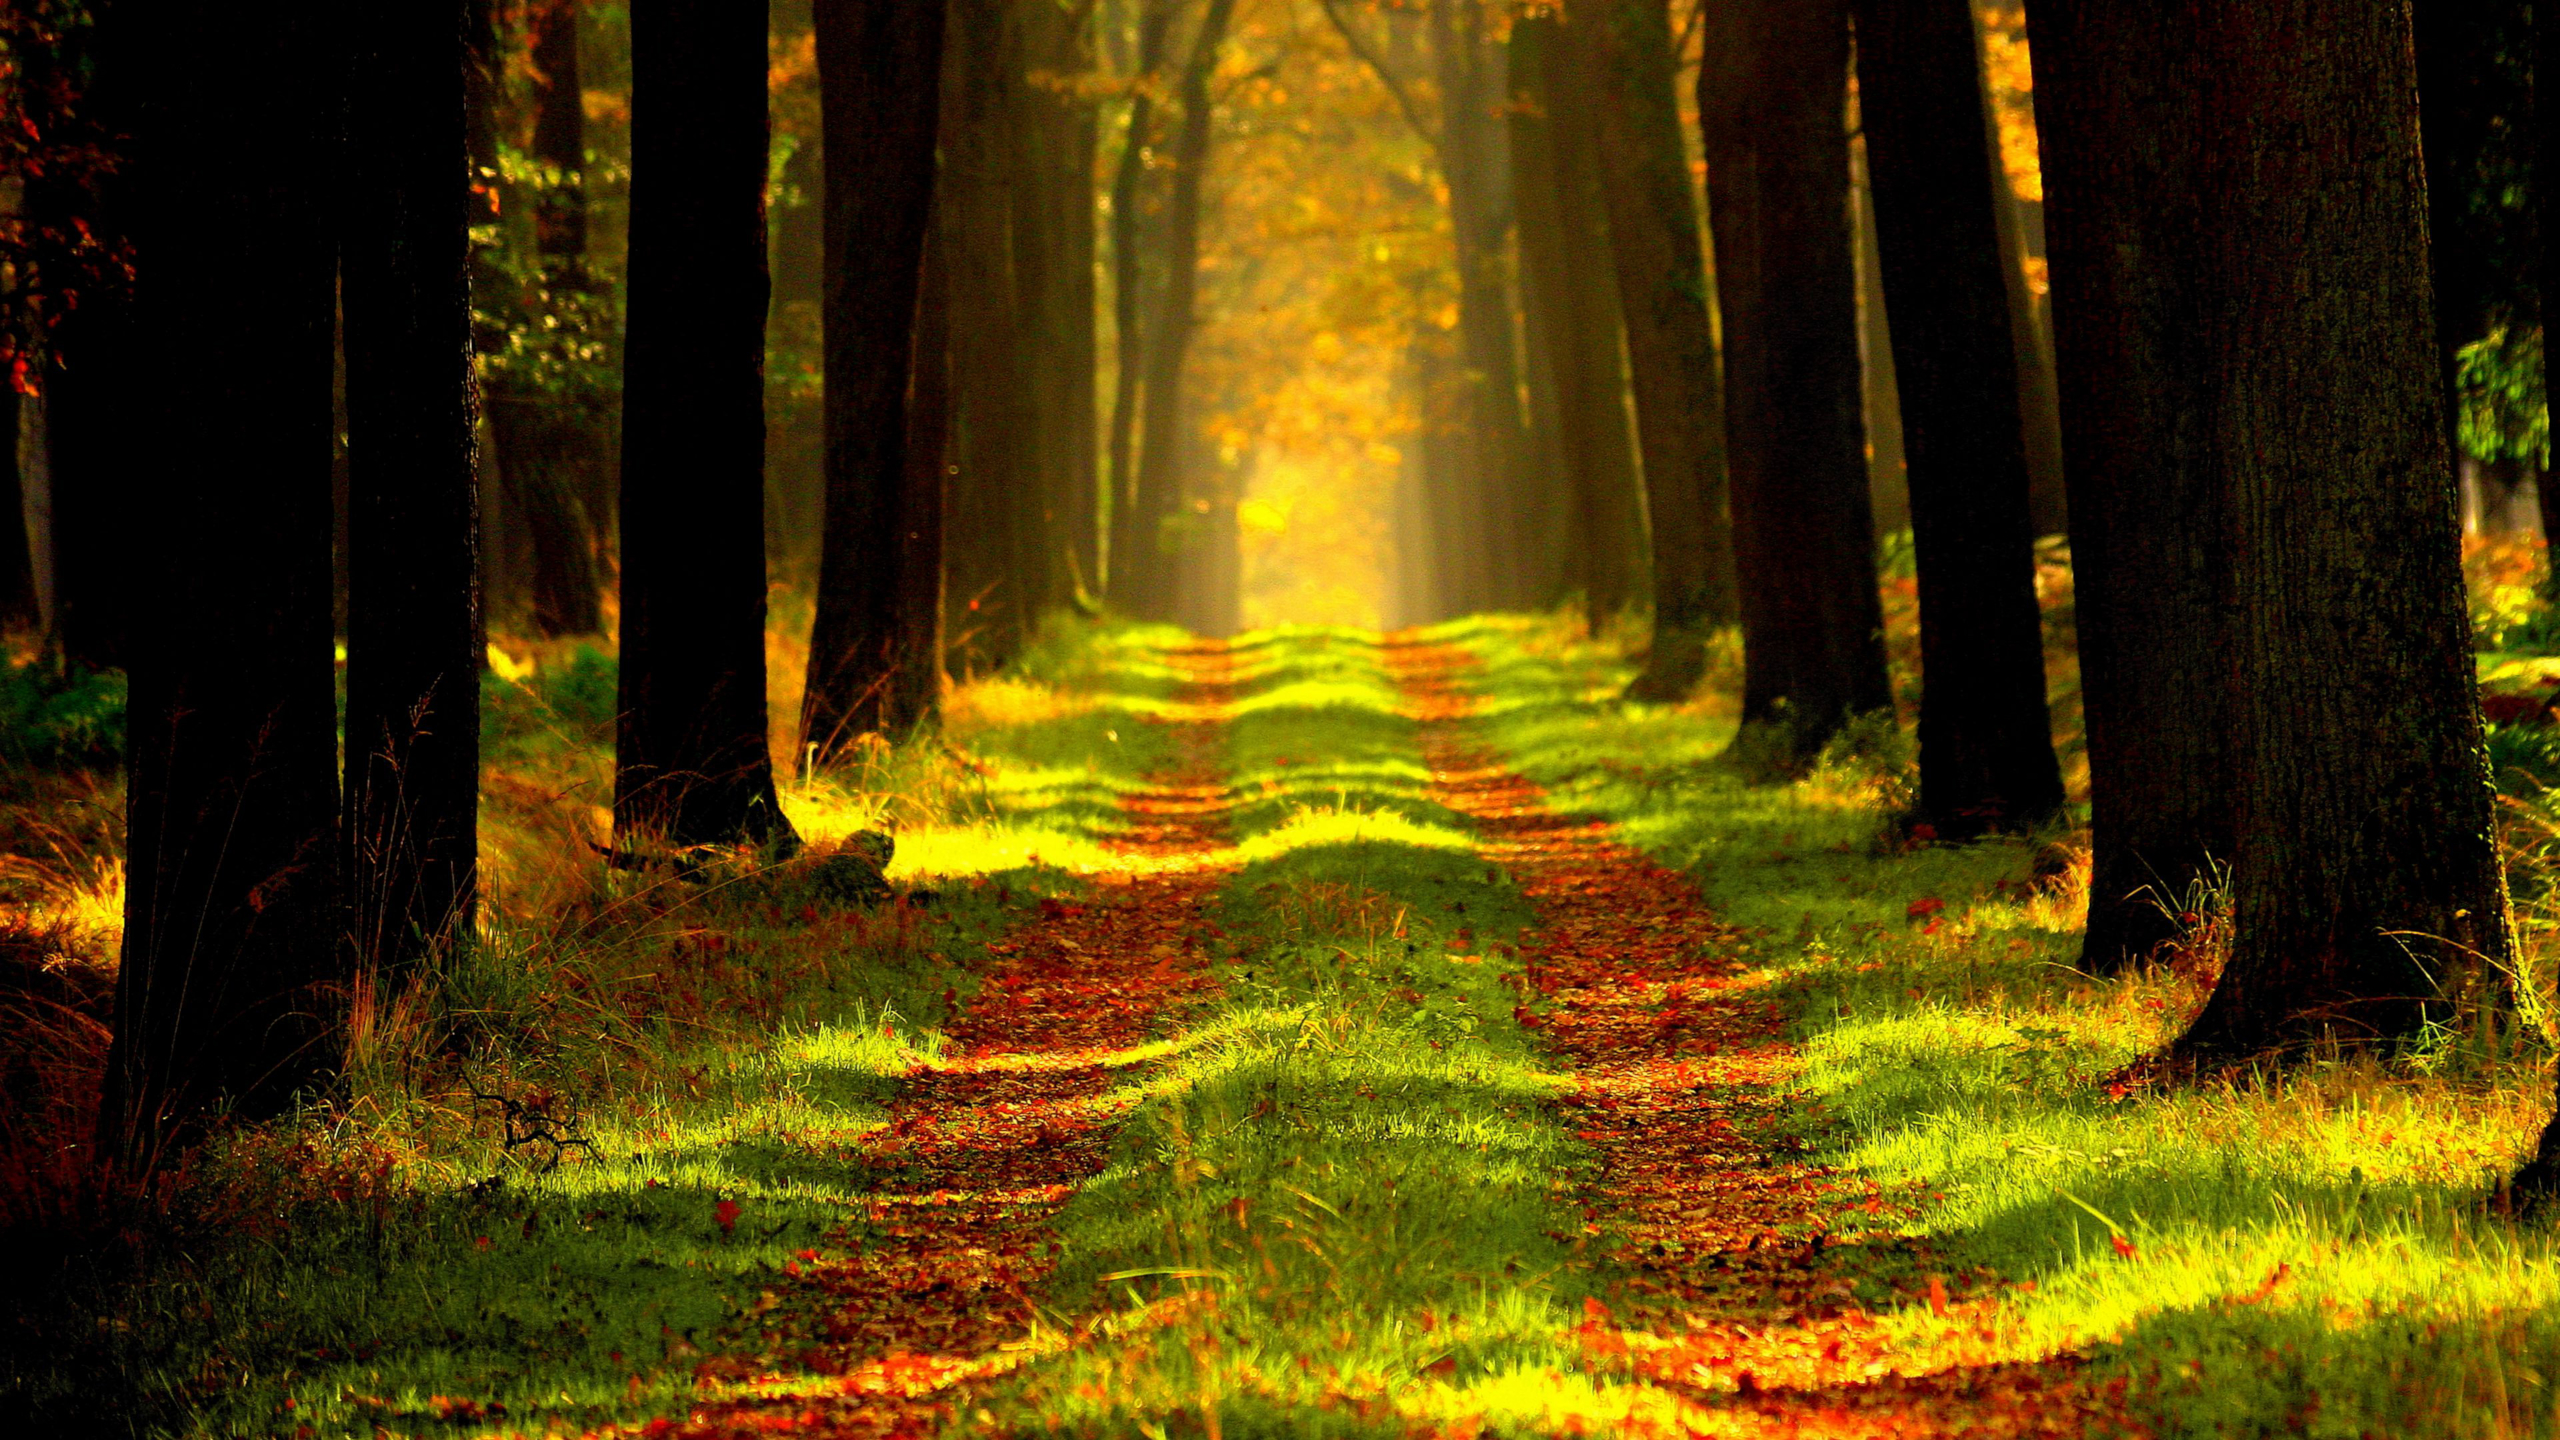 Скачать обои бесплатно Трава, Осень, Лес, Дерево, Дорожка, Земля/природа картинка на рабочий стол ПК